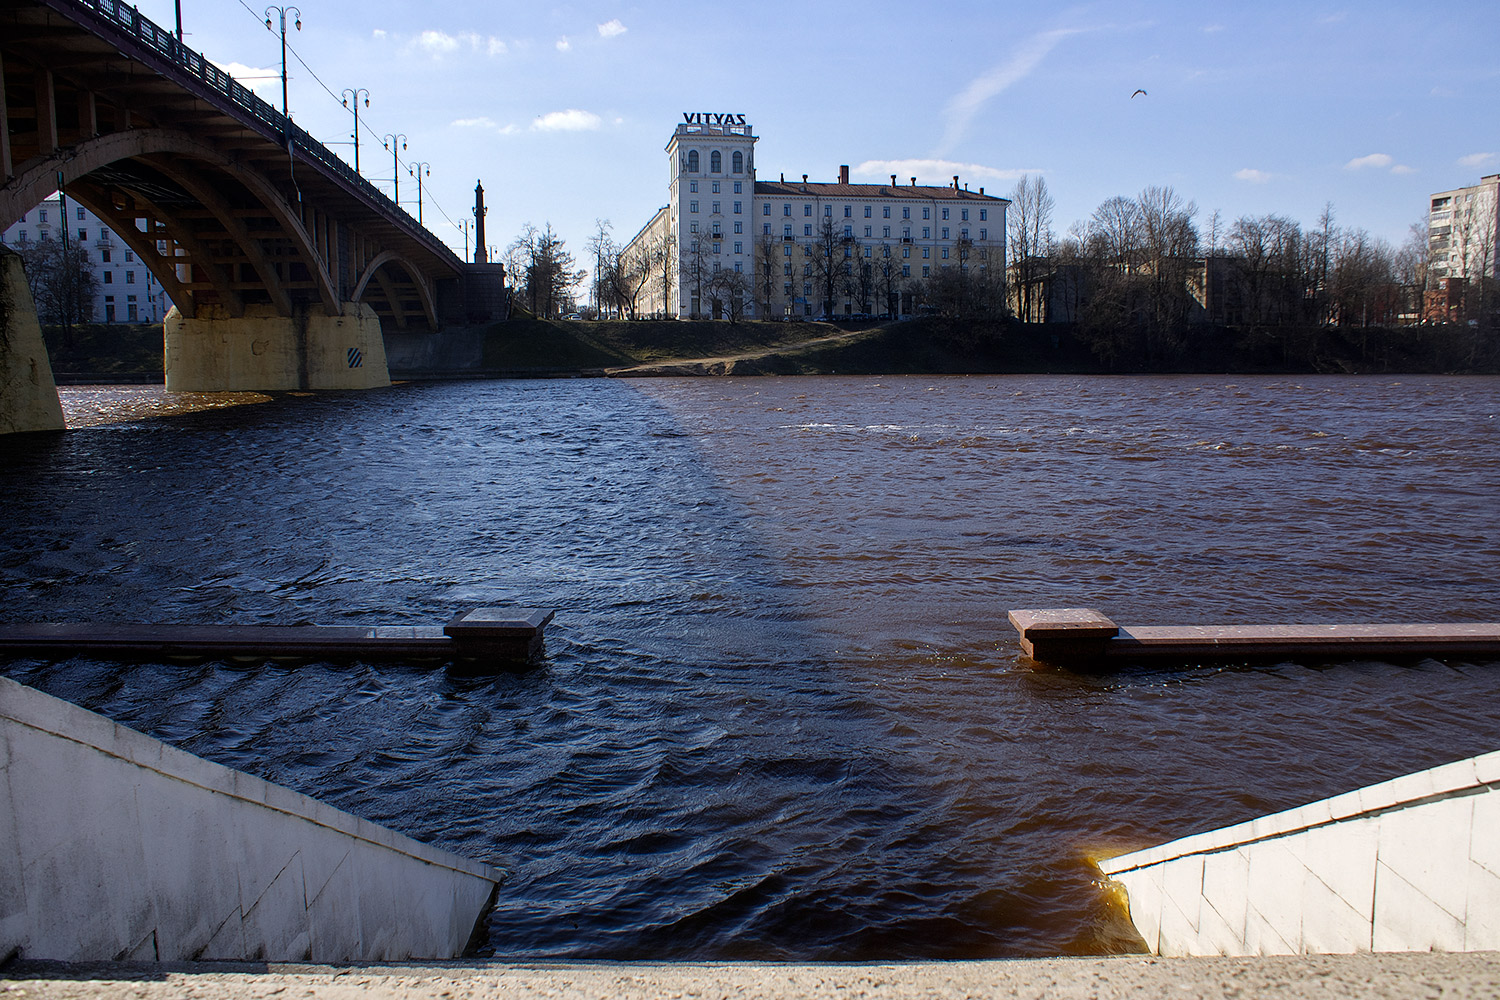 затопленная набережная у Кировского моста в Витебске во время весеннего паводка на Двине. Фото Сергея Серебро